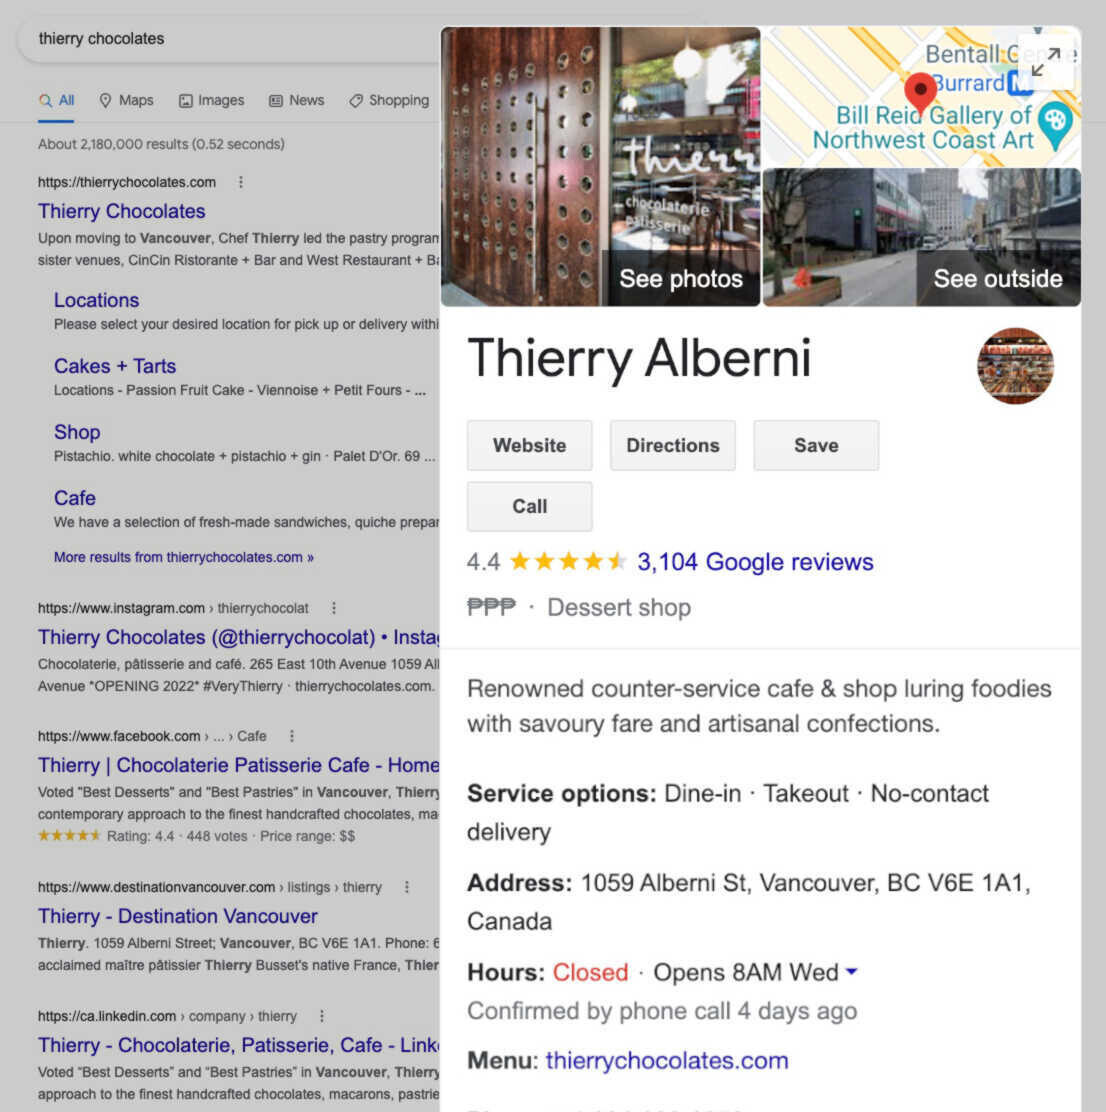 Perfil de negócios de Thierry Alberni